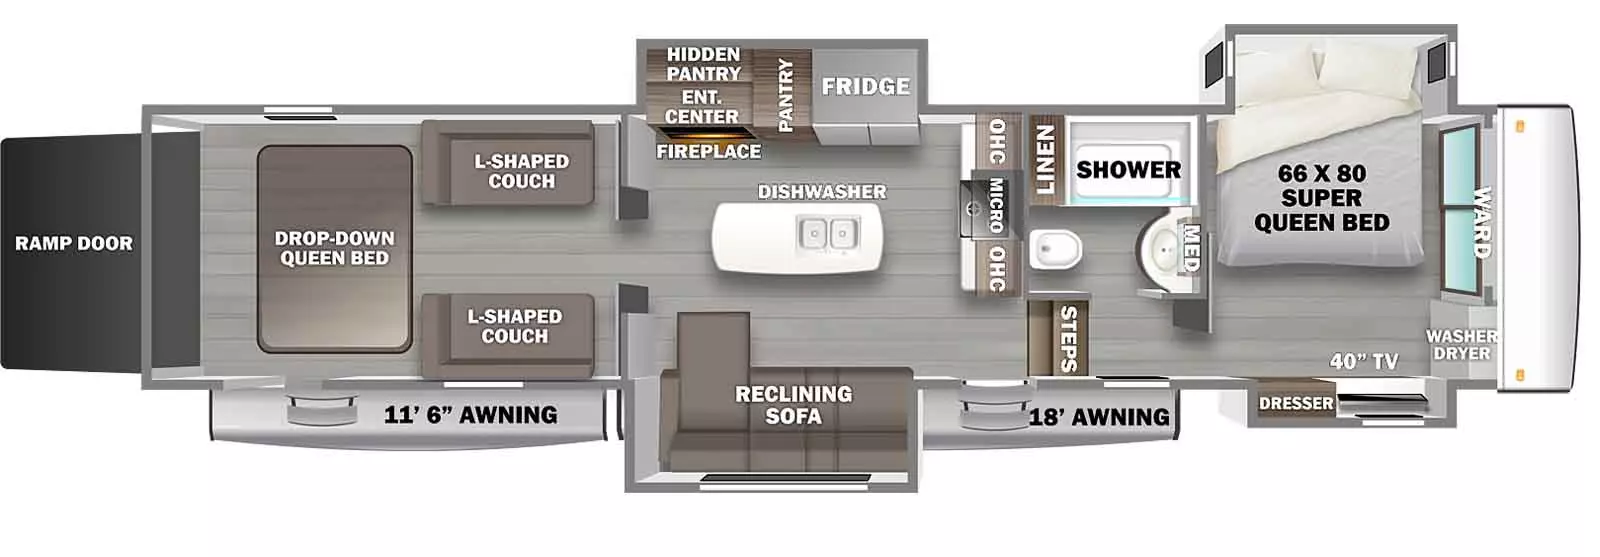 4514BATH Floorplan Image